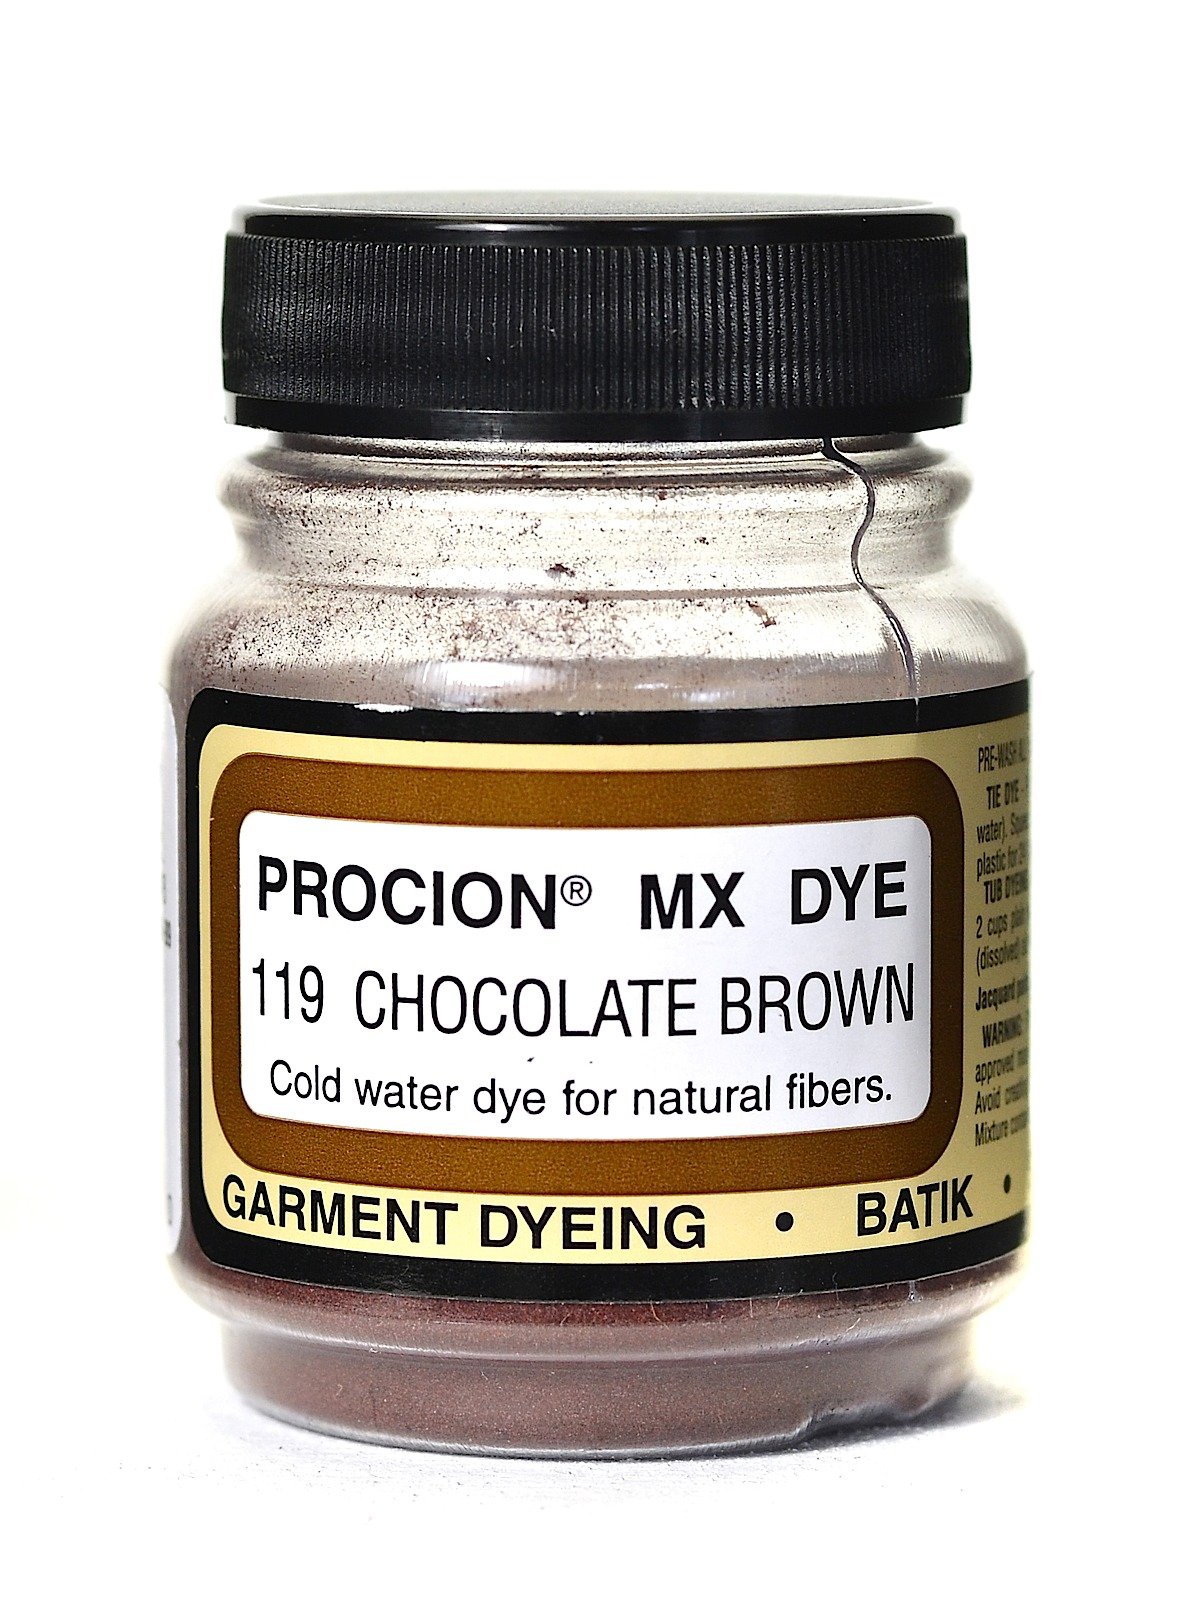 Jacquard Procion MX Dye Set